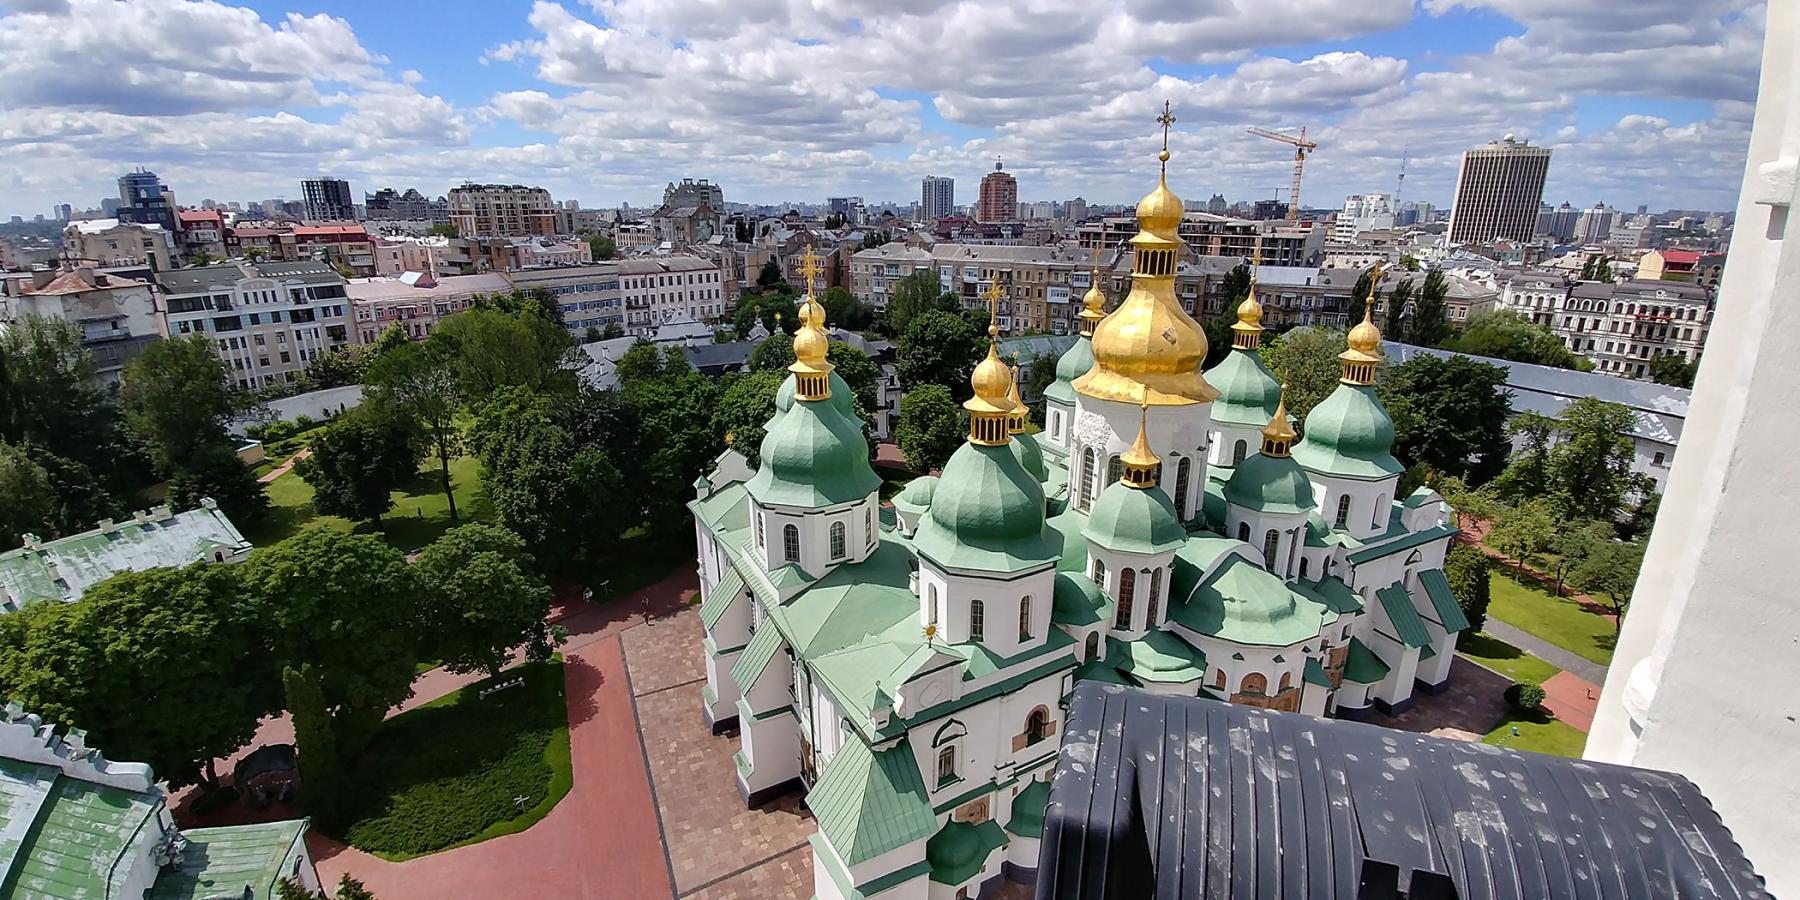 St. Sophia Cathedral in Kiev, Ukraine